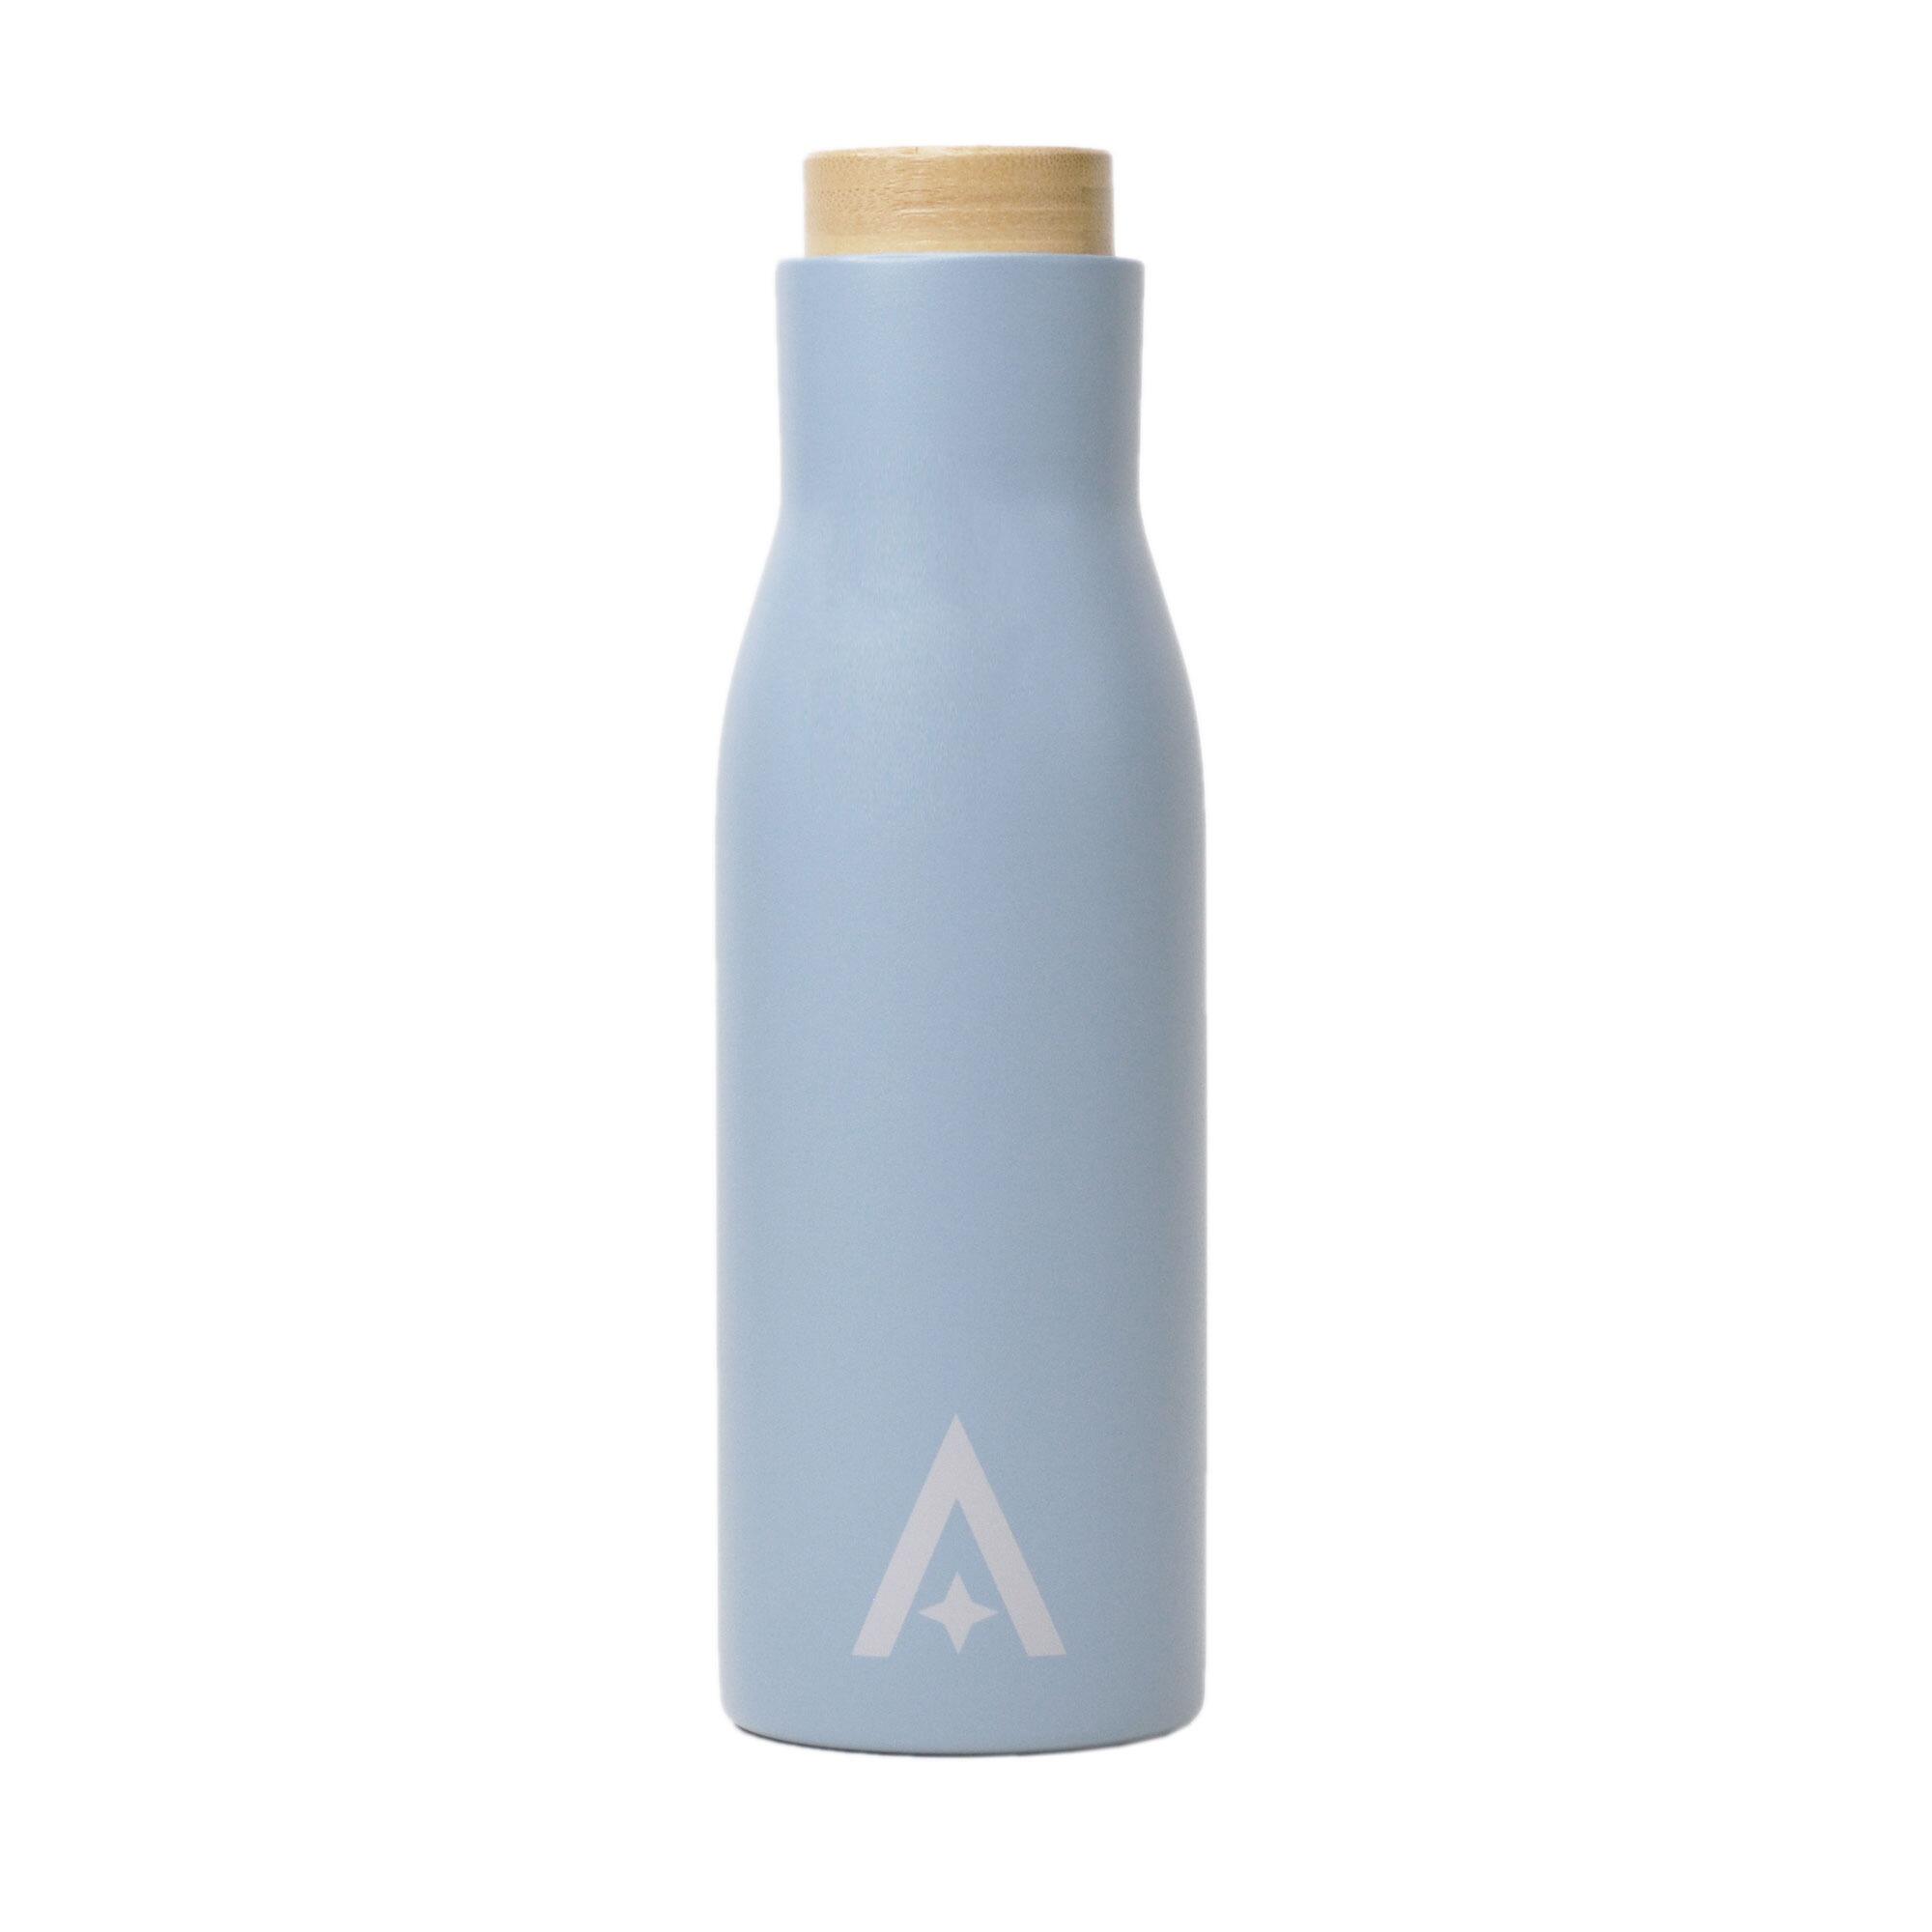 UBERSTAR Insulated Travel Drinks Bottle - 500ml Blue